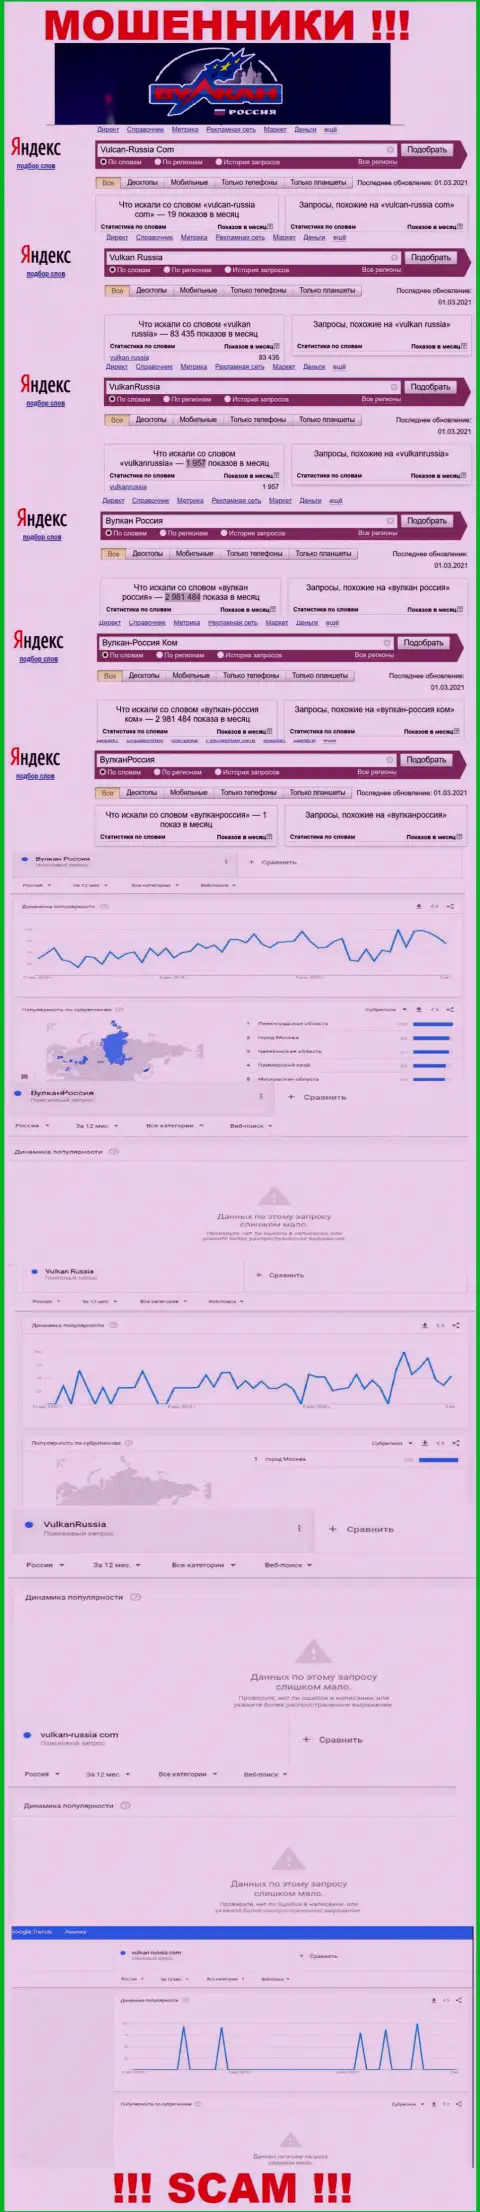 Статистические показатели количества обзоров информации об кидалах Вулкан Россия во всемирной сети